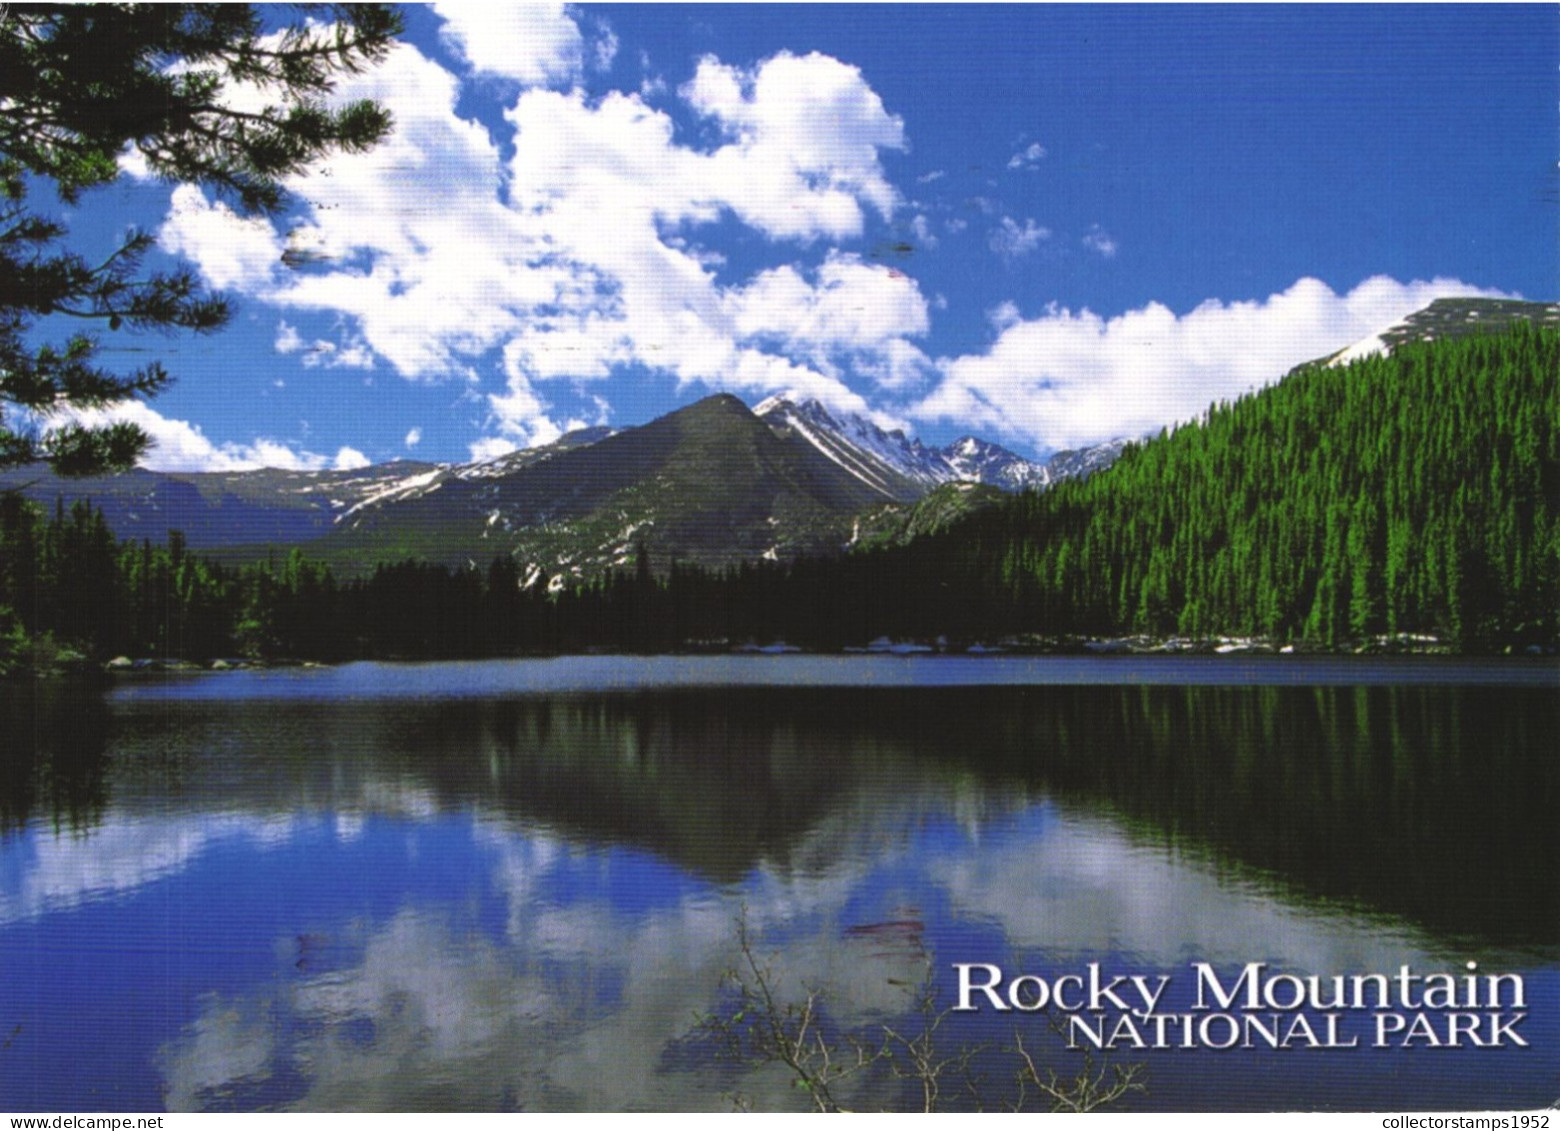 ROCKY MOUNTAIN, NATIONAL PARK, BEAR LAKE, COLORADO - Rocky Mountains